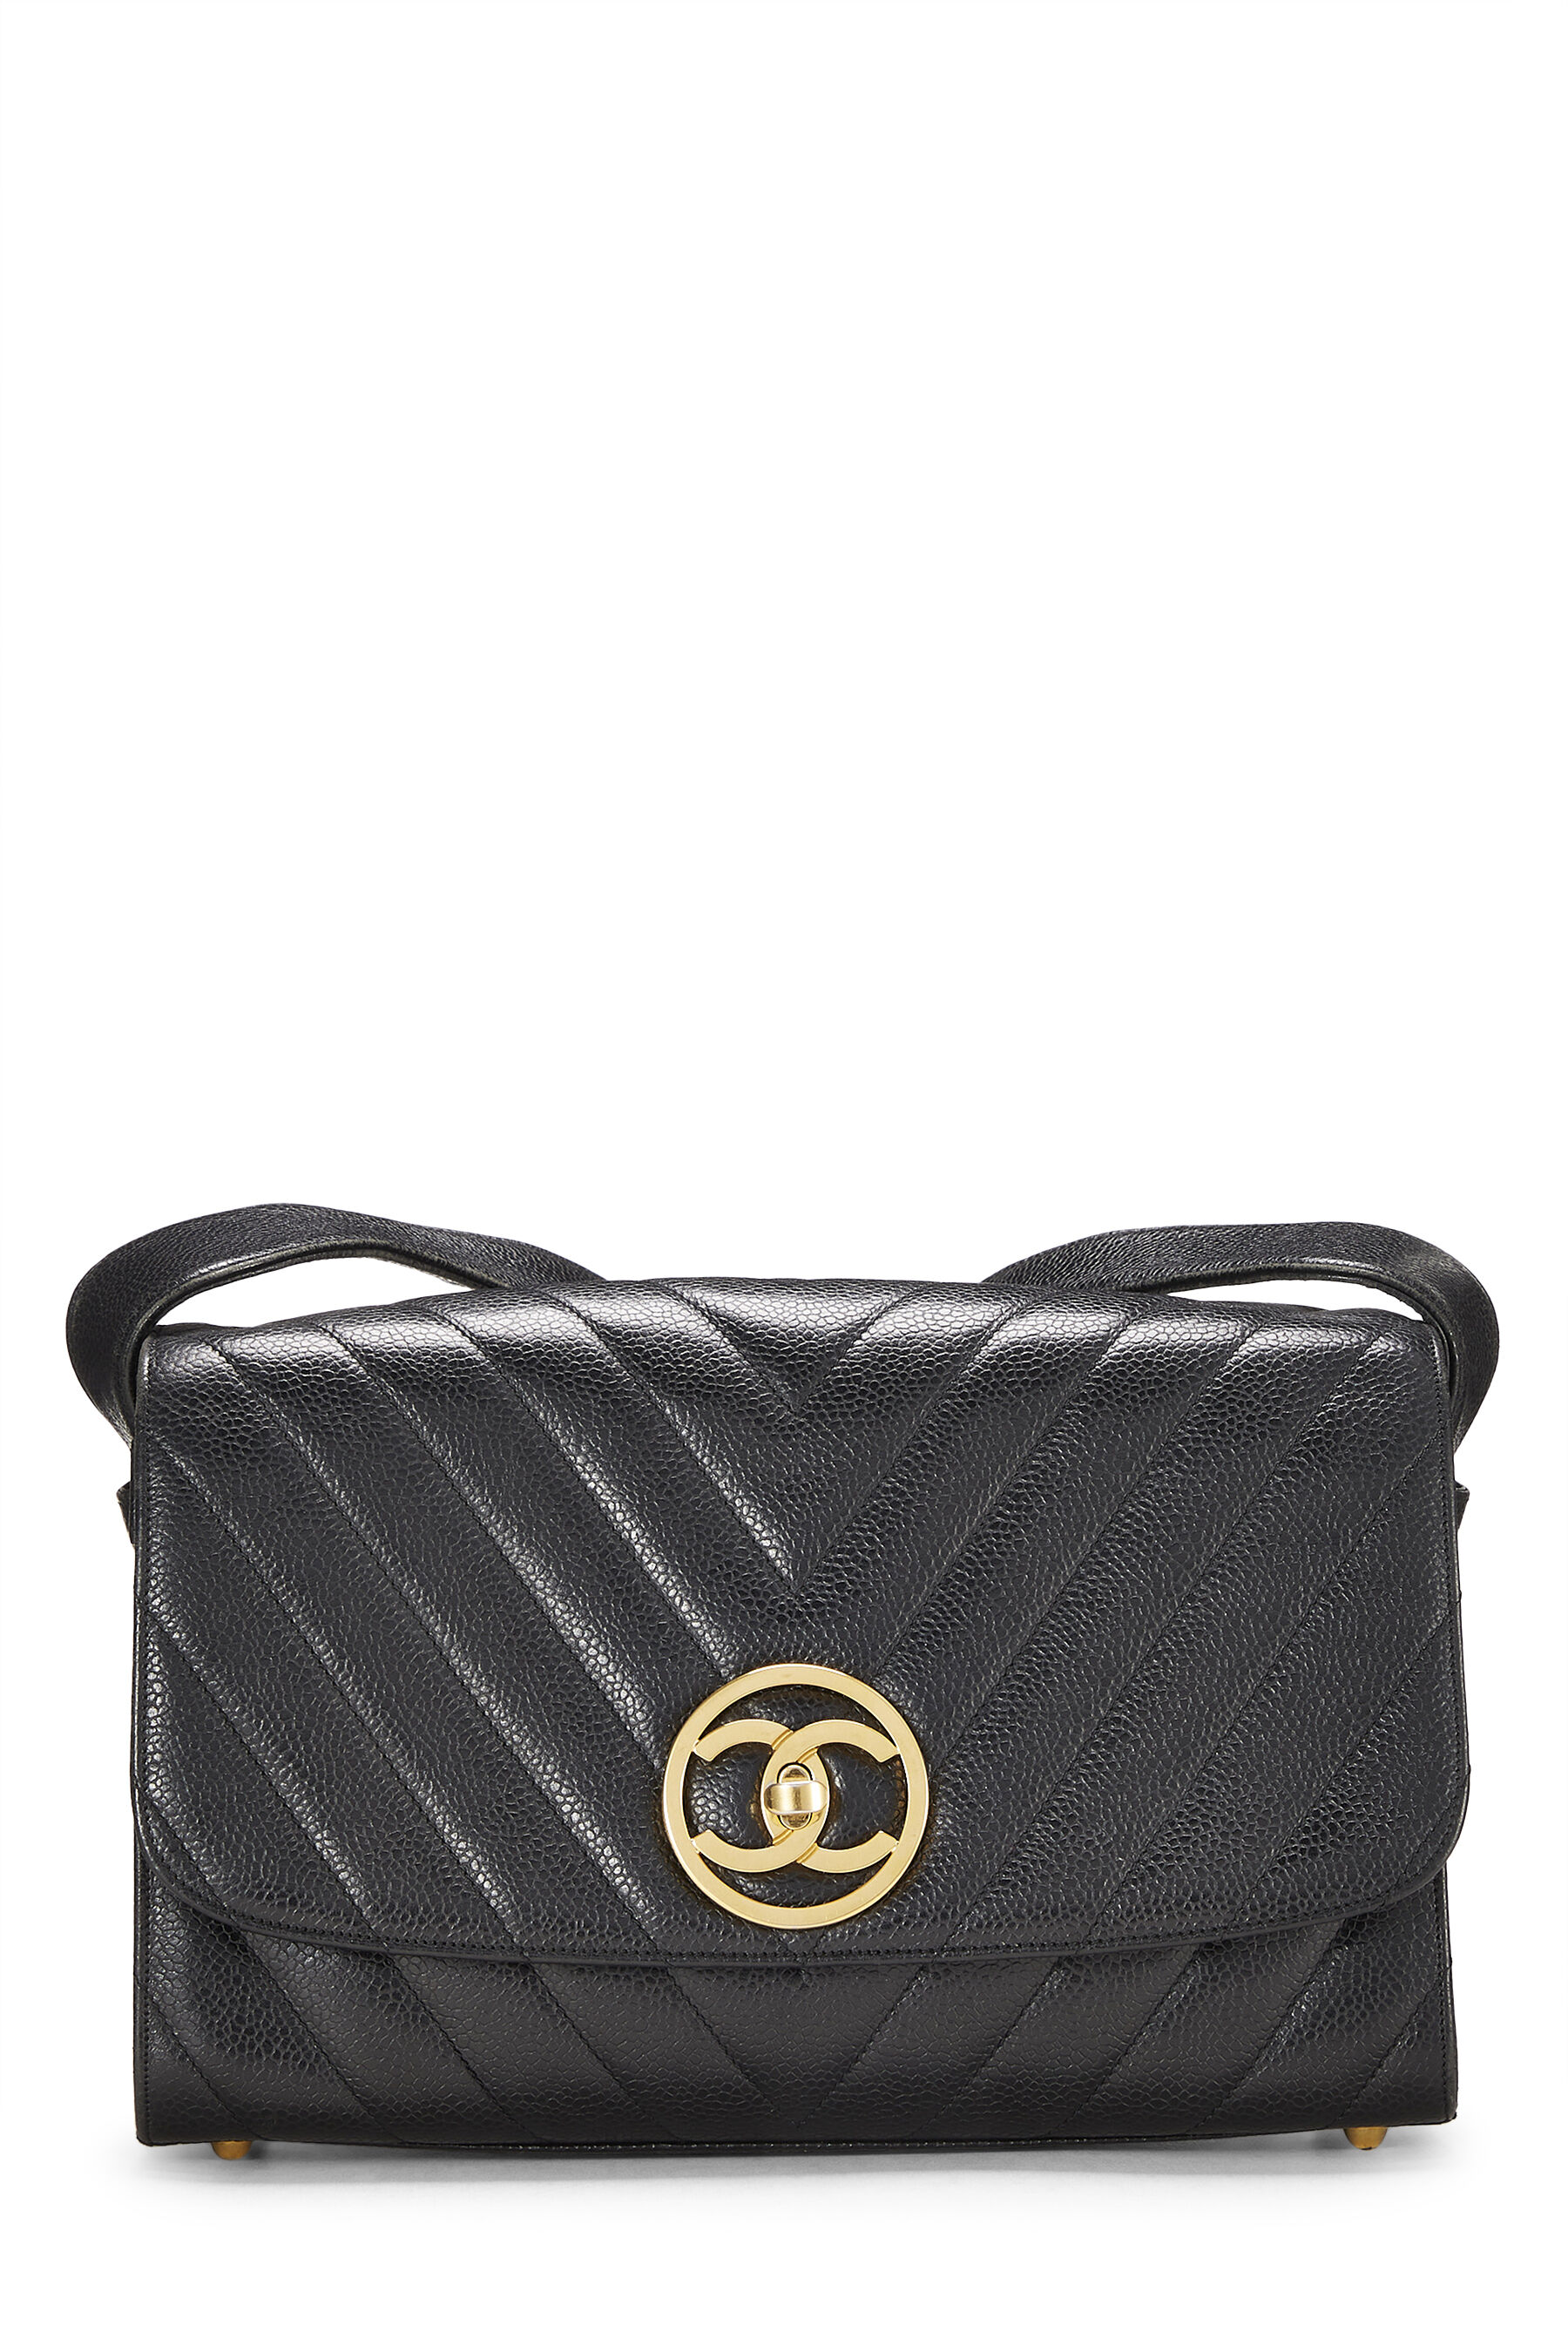 Chanel Black Caviar Chevron Envelope Flap Bag